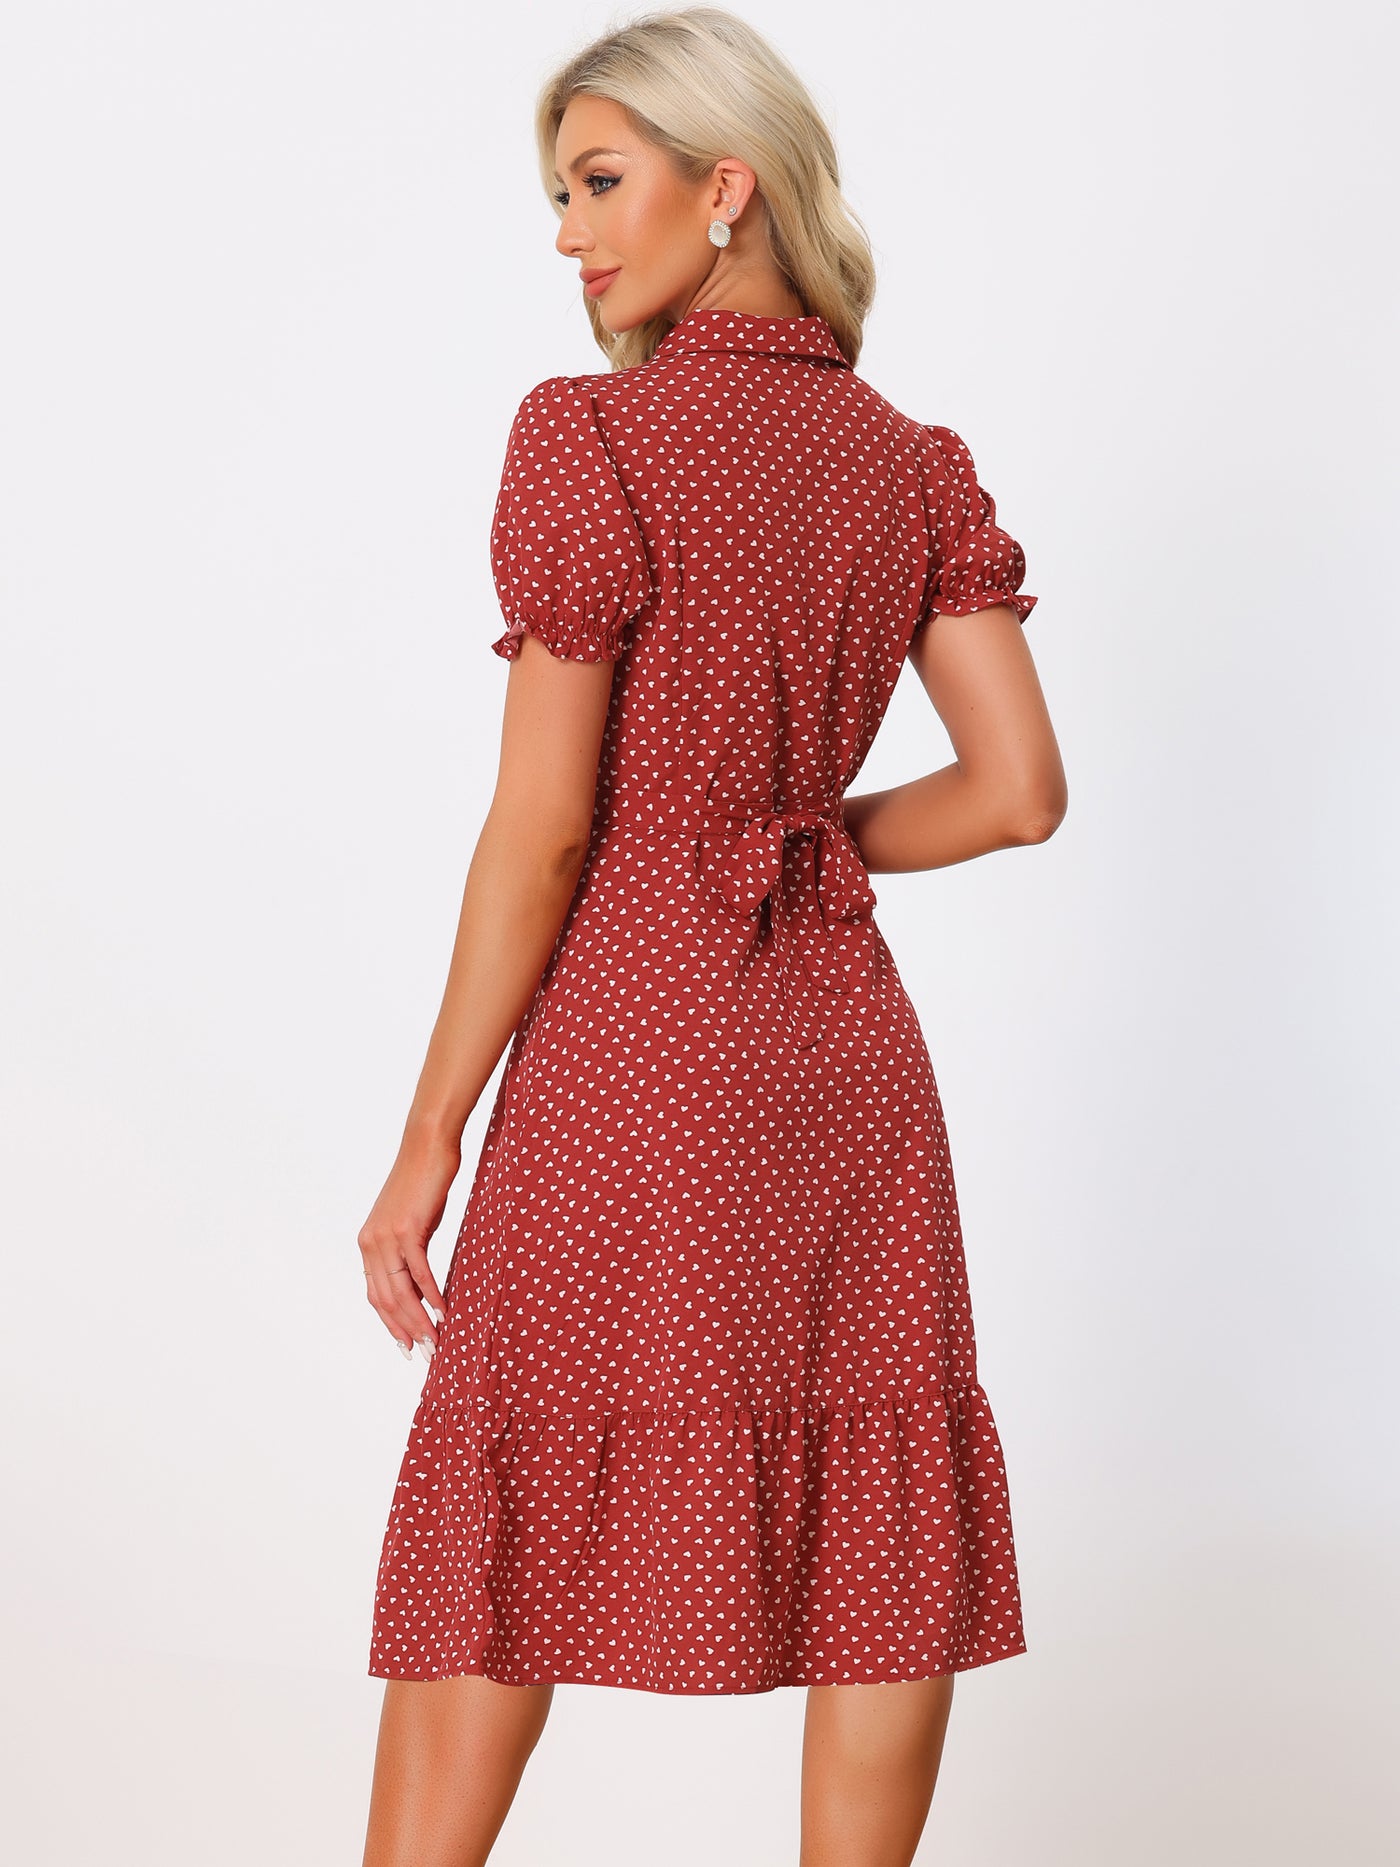 Allegra K Heart Print Dresses for Women's Lapel Collar Puff Short Sleeves Vintage Ruffled Dress